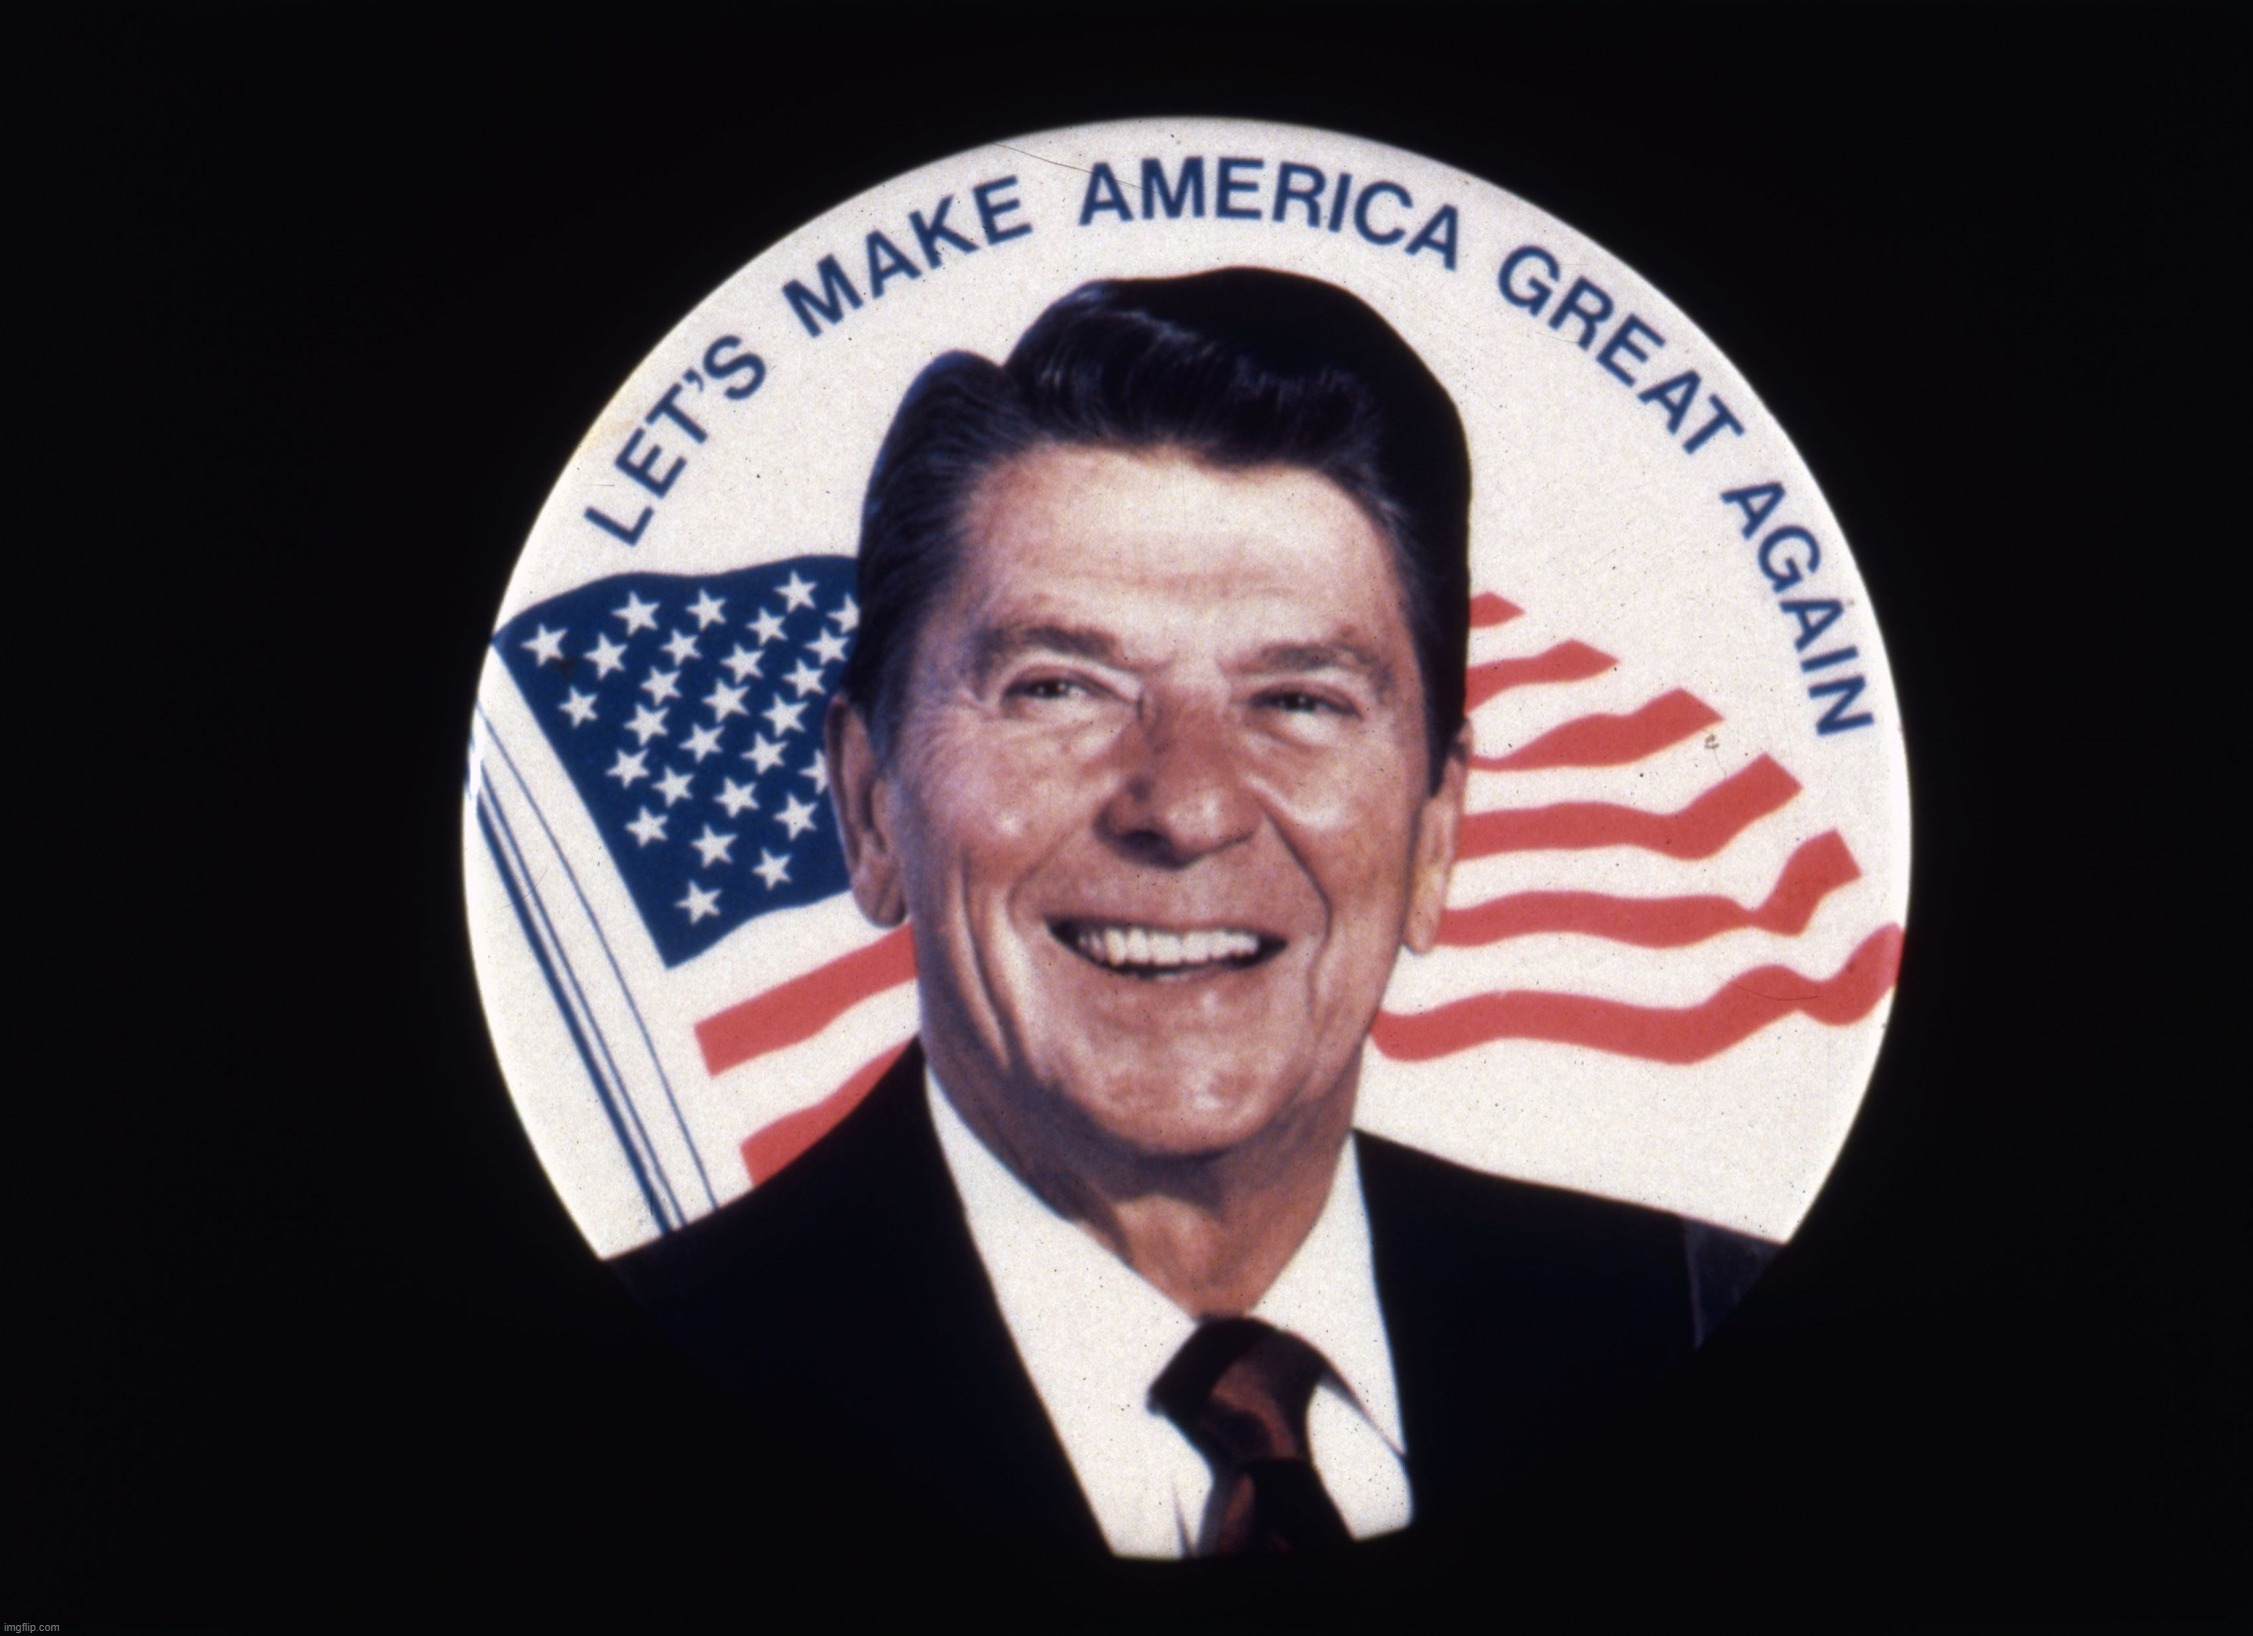 Ronald Reagan Let's Make America Great Again | image tagged in ronald reagan let's make america great again | made w/ Imgflip meme maker